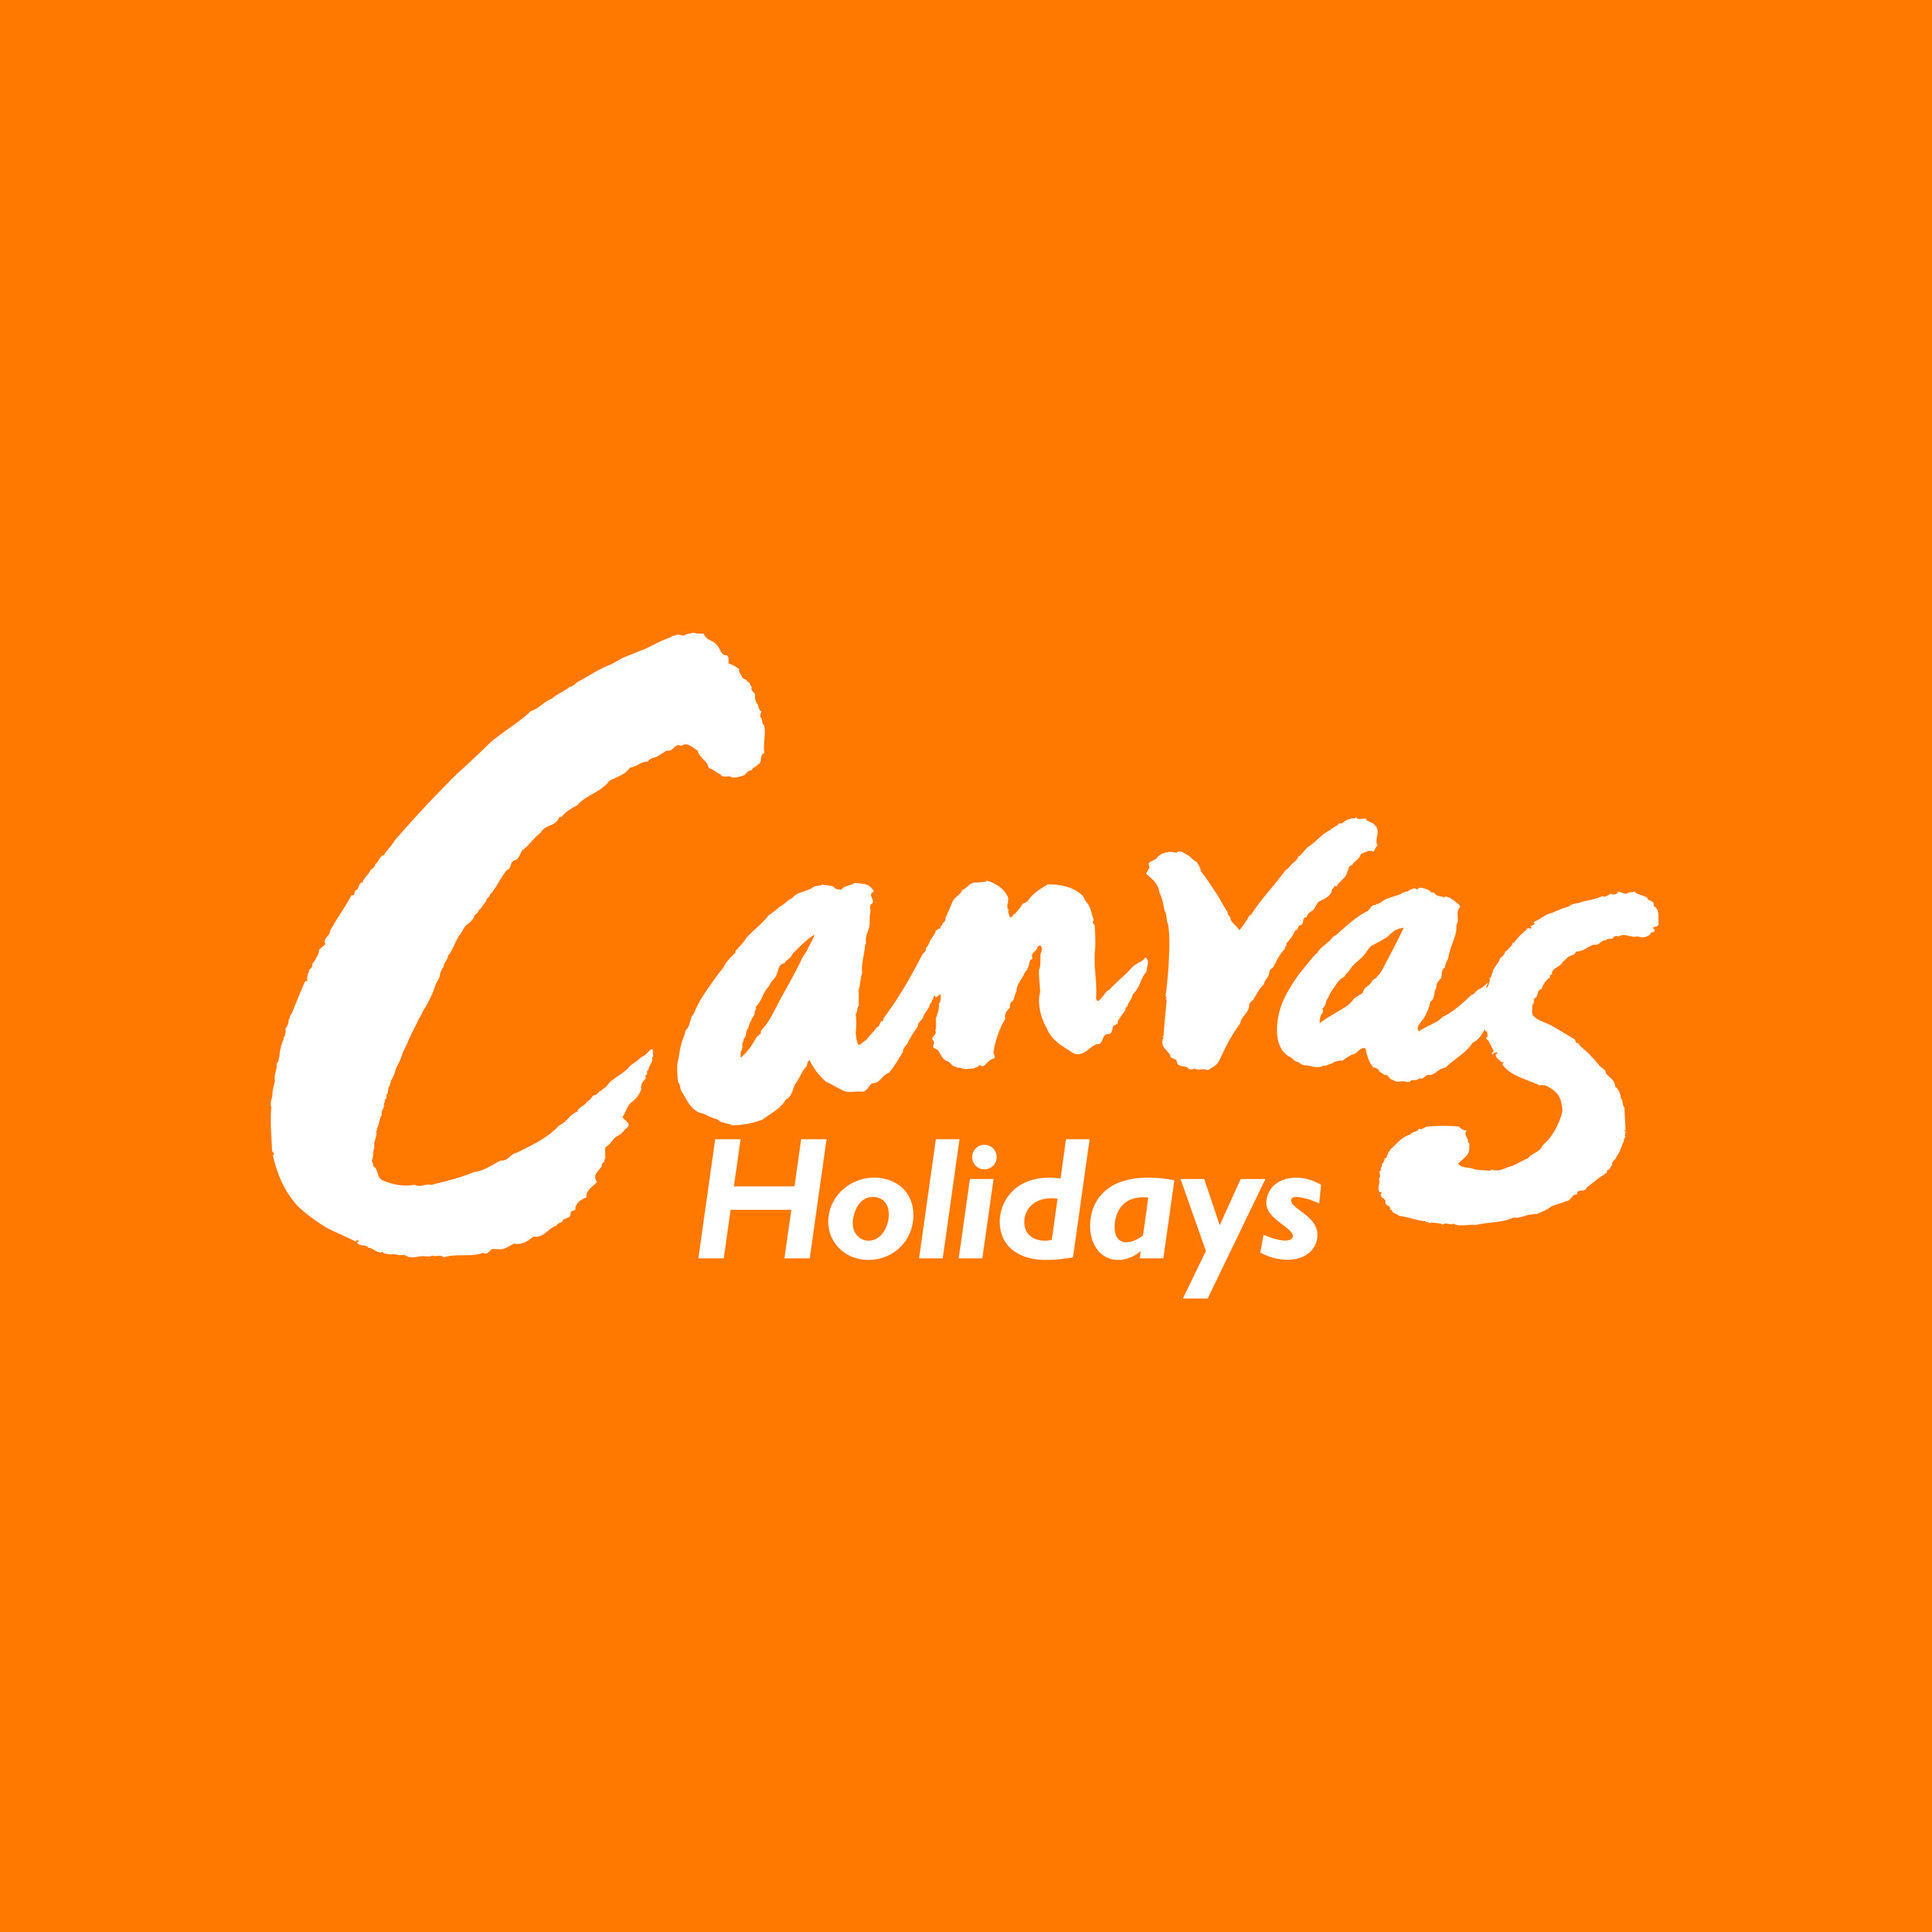 Orange and White Logo - Canvas Holidays white on orange logo - JuggleMum